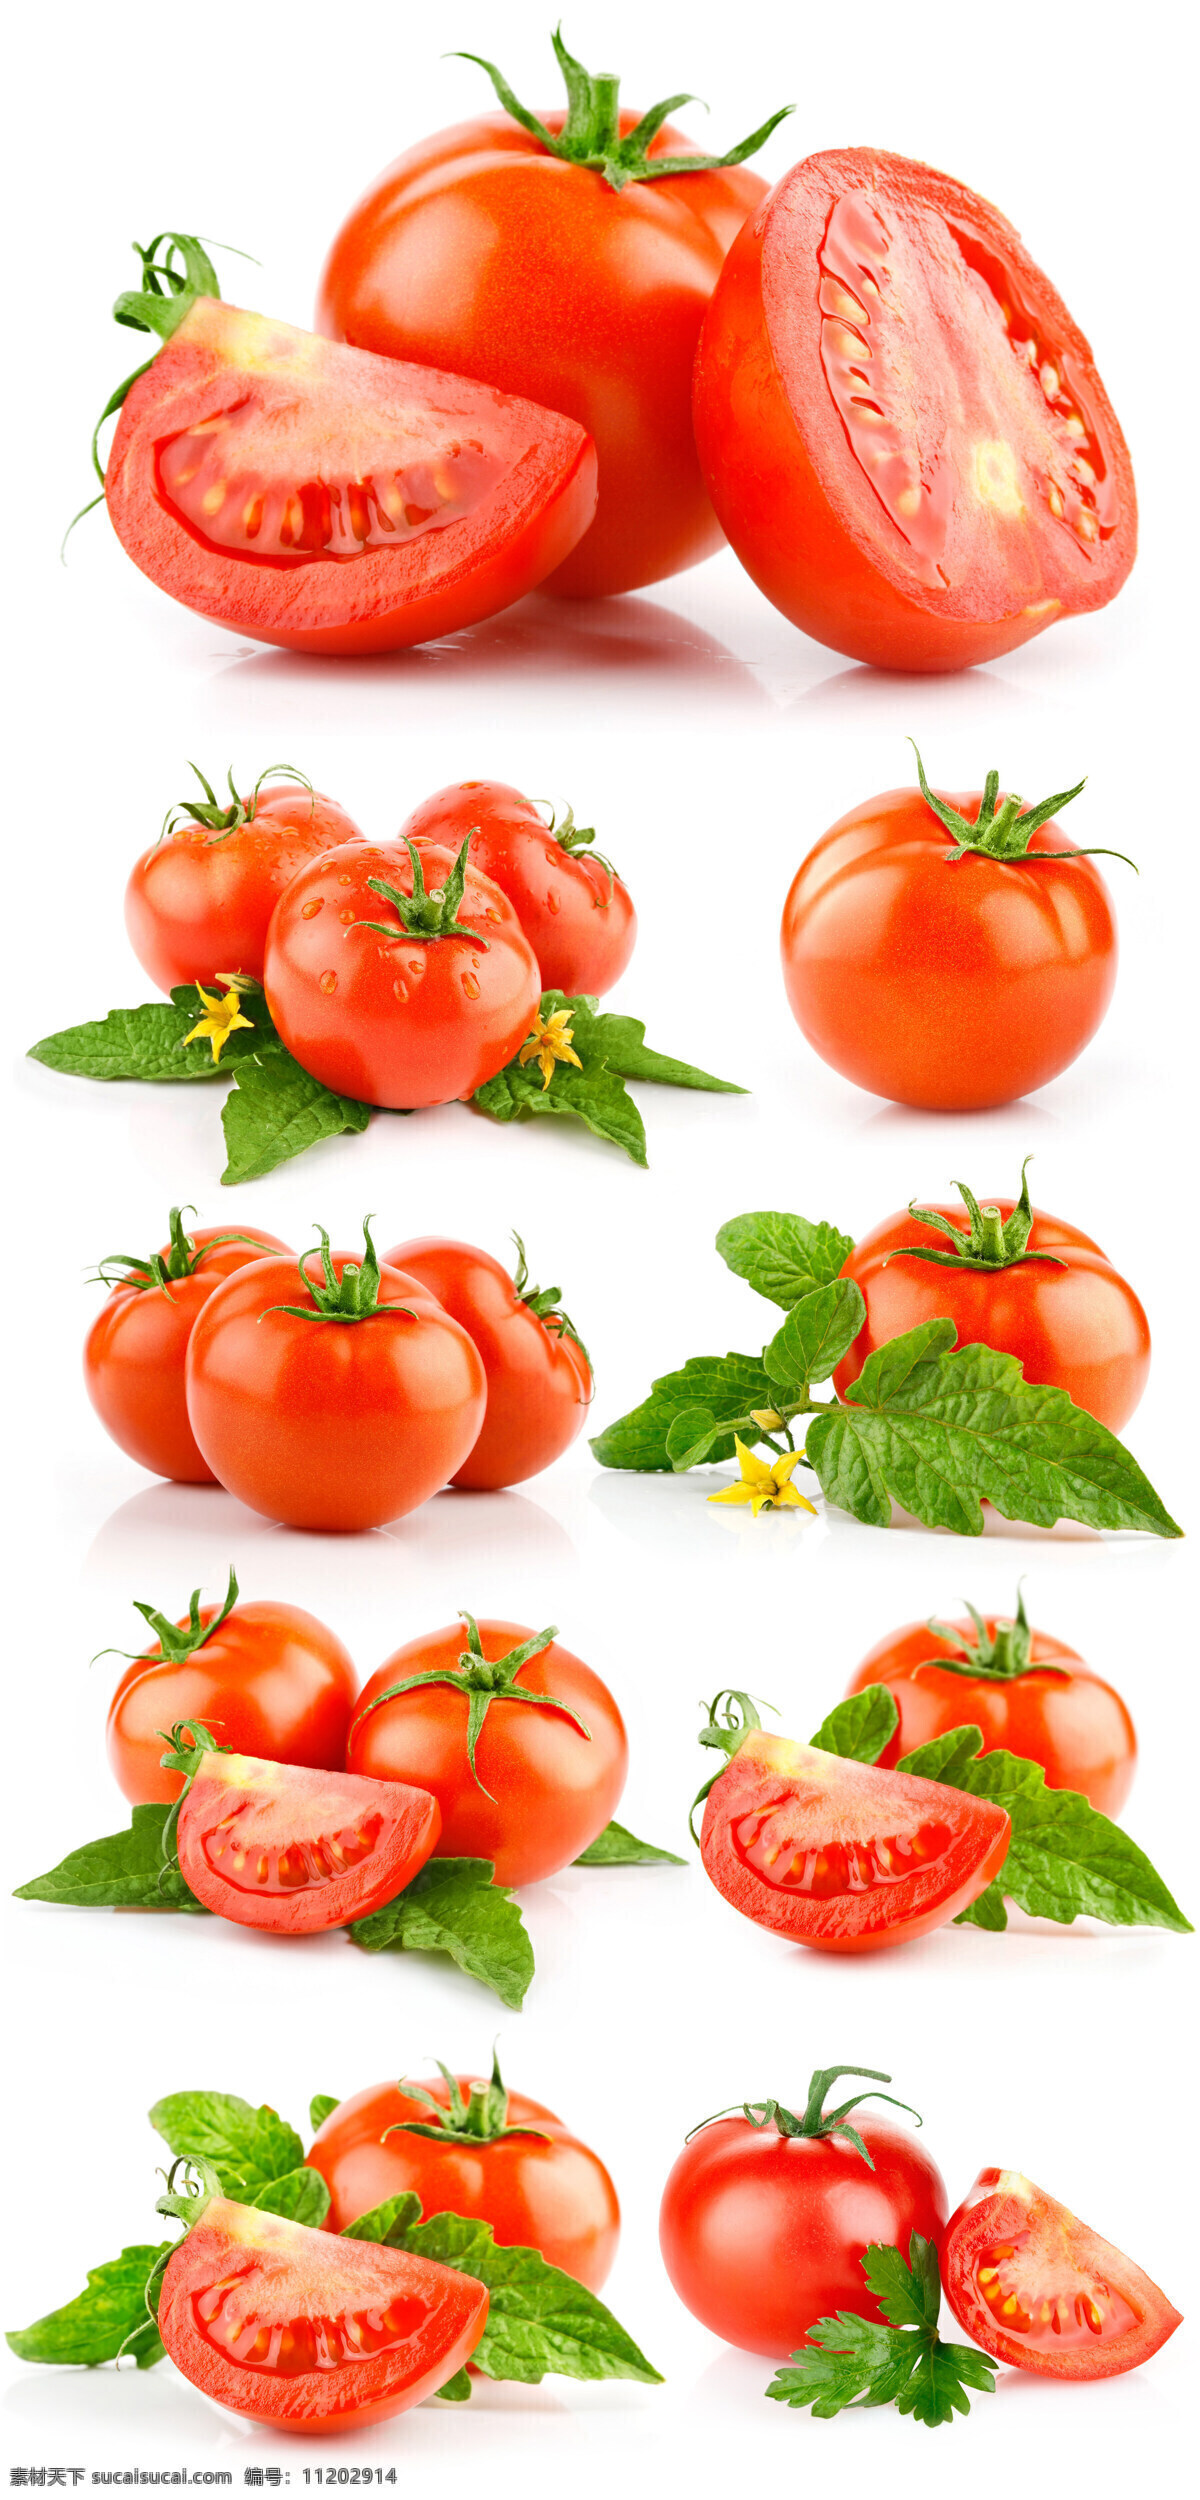 西红柿 番茄 果蔬 水果 新鲜水果 小西红柿 小番茄 大西红柿 红西红柿 新鲜西红柿 蔬菜 切开的西红柿 餐饮美食 食物原料